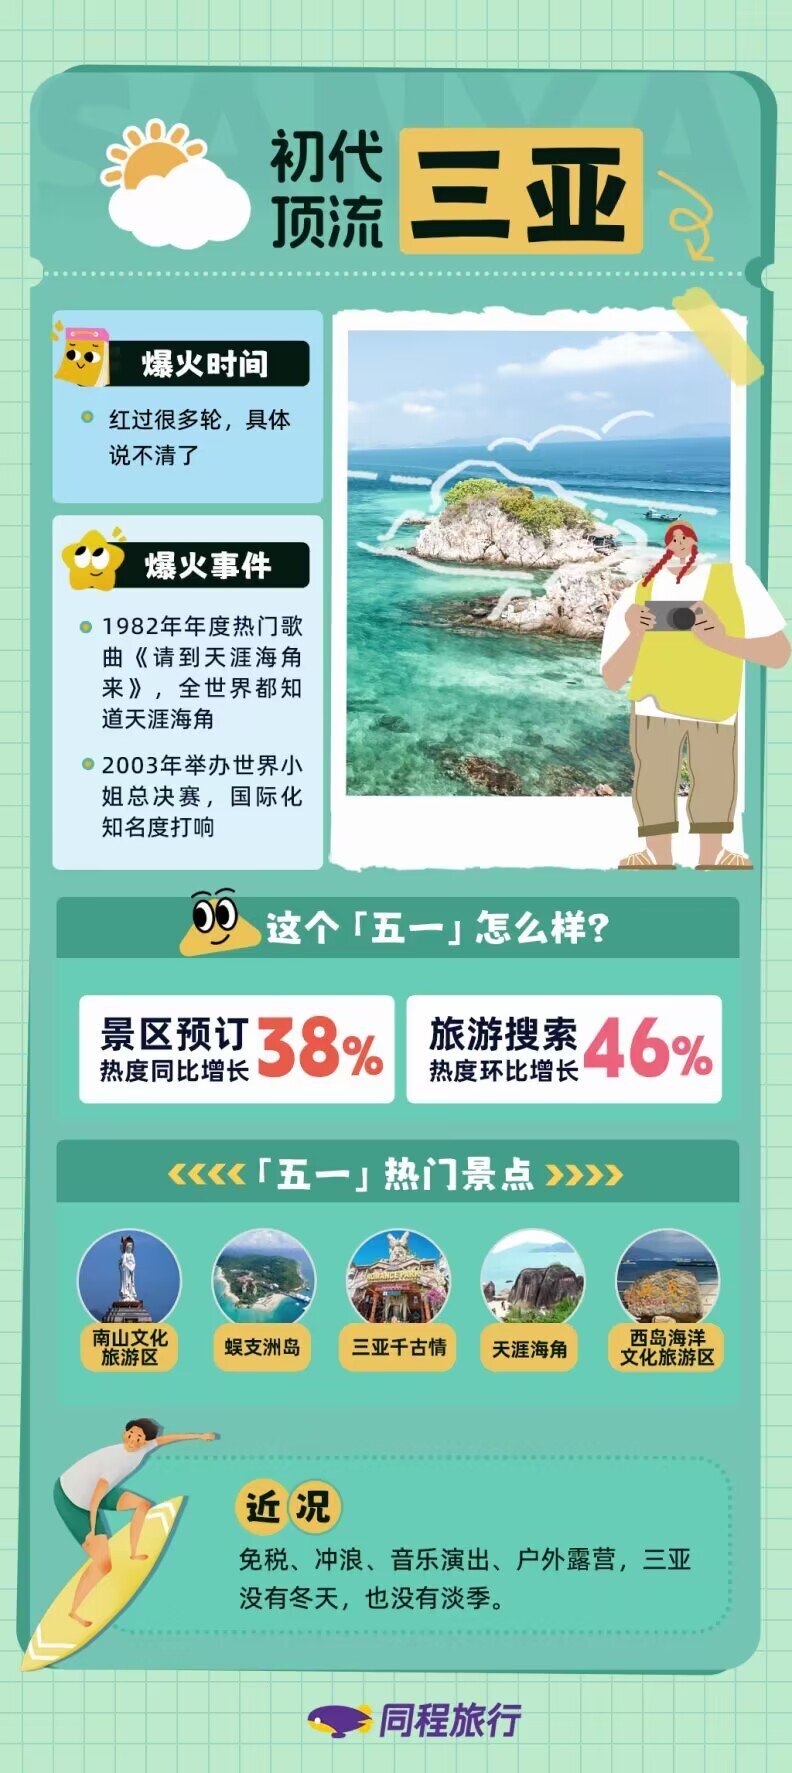 数据显示,今年五一期间,三亚景区预订热度同比增长了38%,旅游搜索